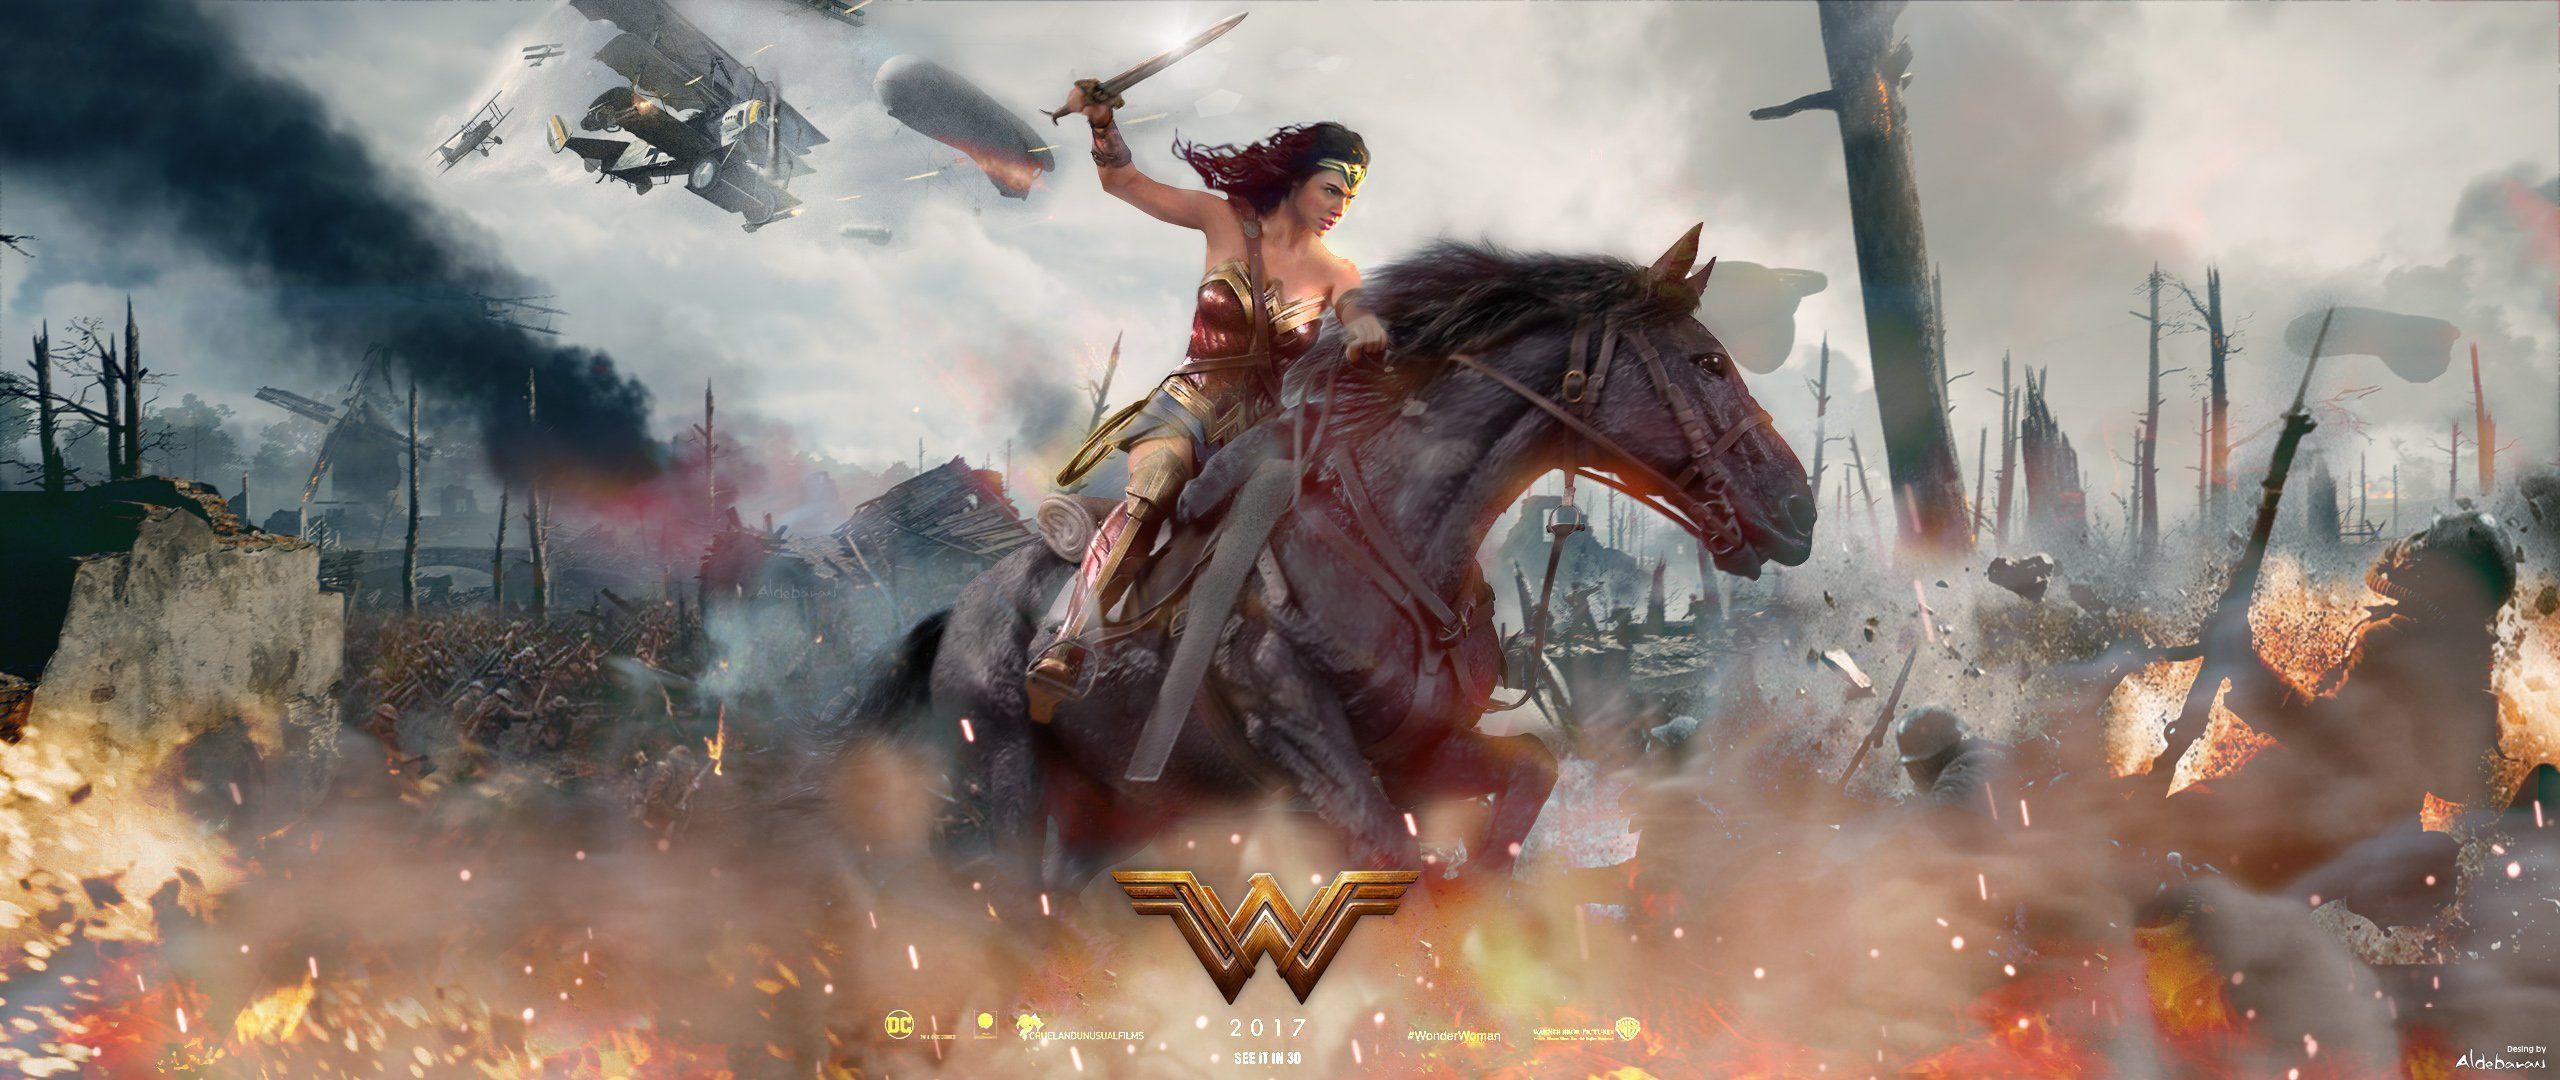 Wonder Woman Movie Fan Art. Movies HD 4k Wallpaper